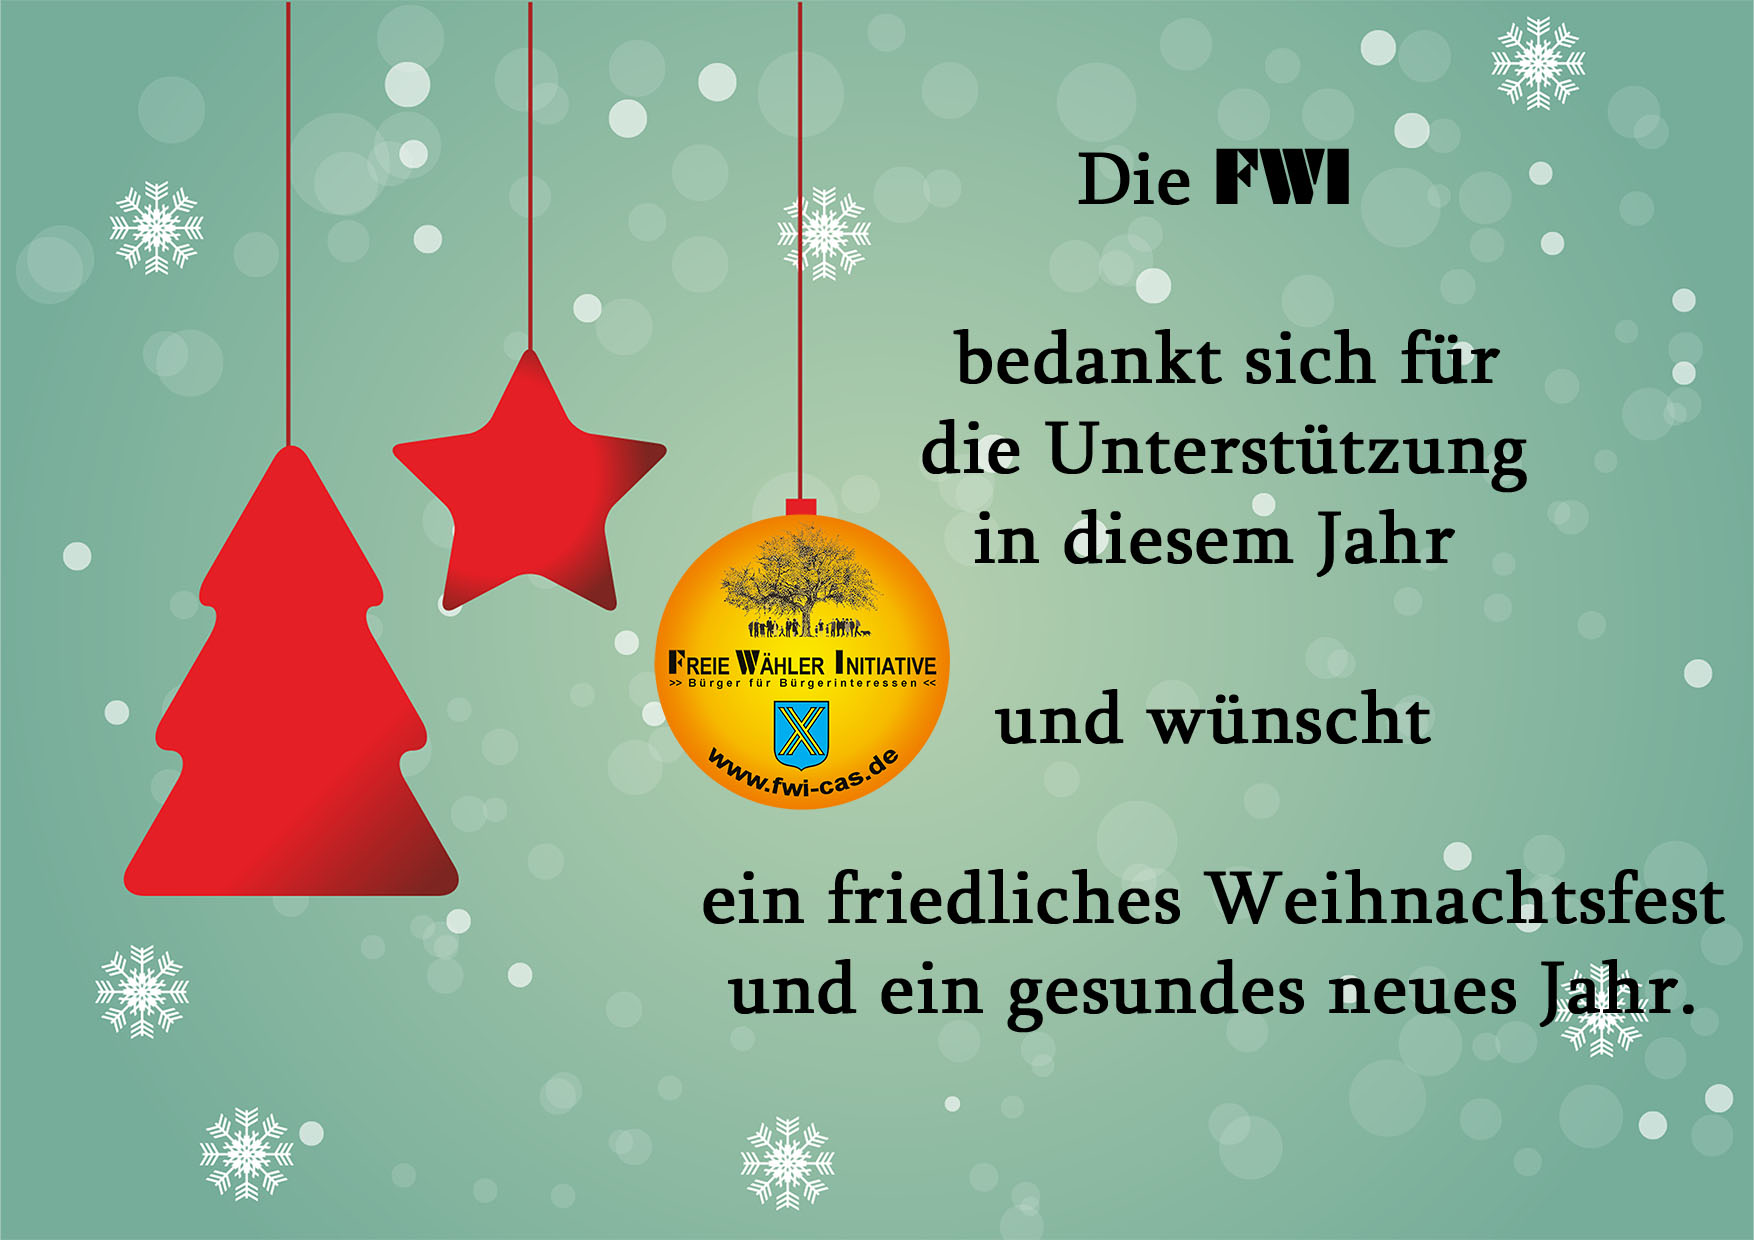 Bild: FWI-Logo als Kugel mit Grussworte: Die FWI bedankt sich für die Unterstützung un diesem Jahr und wünscht ein friedliches Weihnachtsfest und ein gesundes neues Jahr.